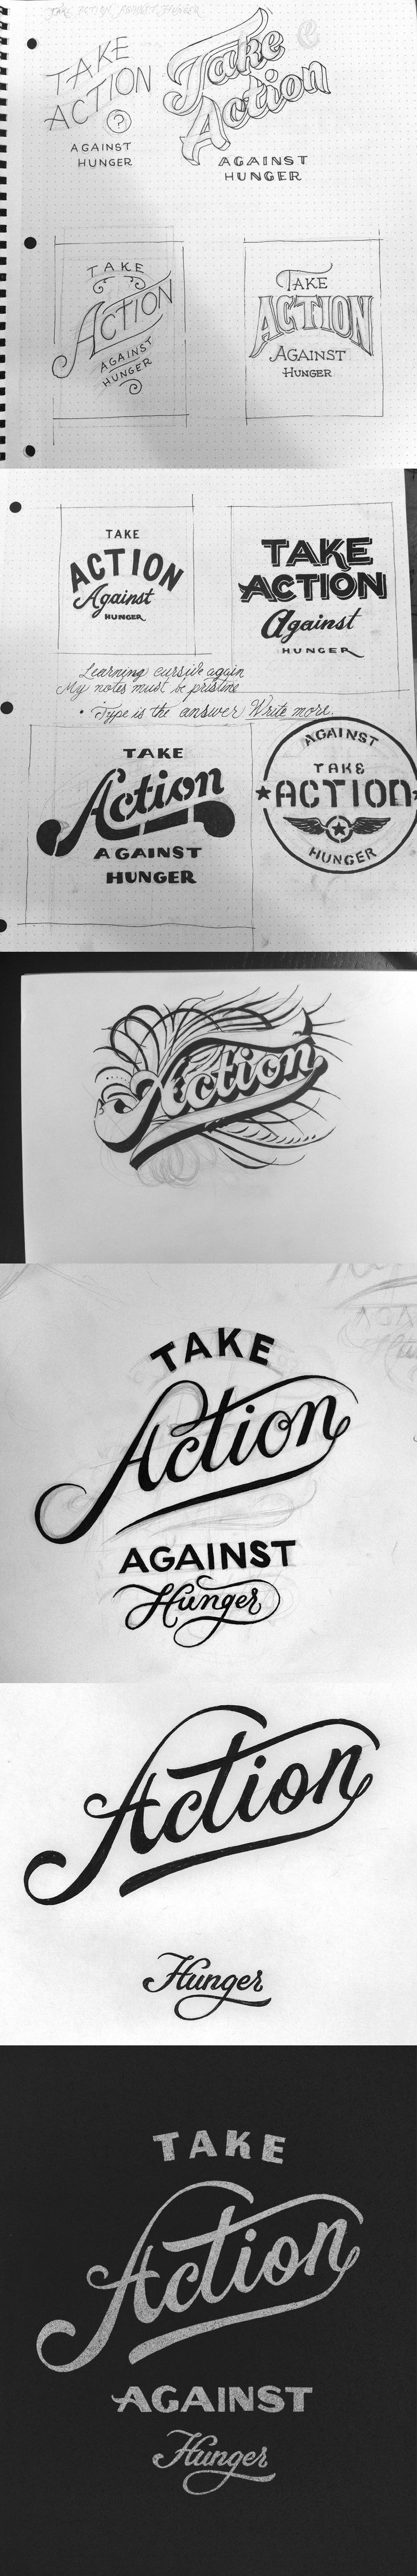 Take-action-large